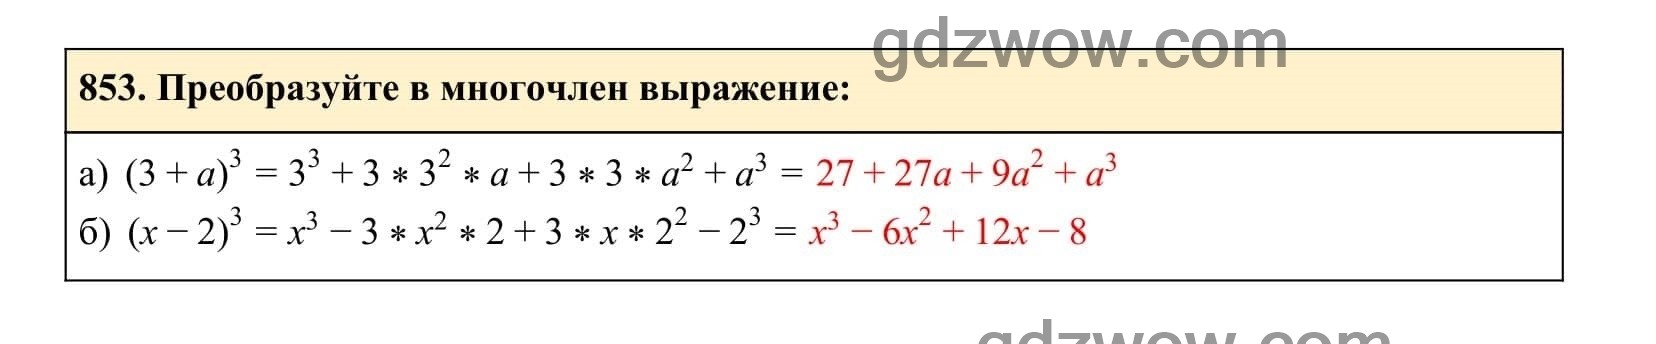 Упражнение 853 - ГДЗ по Алгебре 7 класс Учебник Макарычев (решебник) - GDZwow